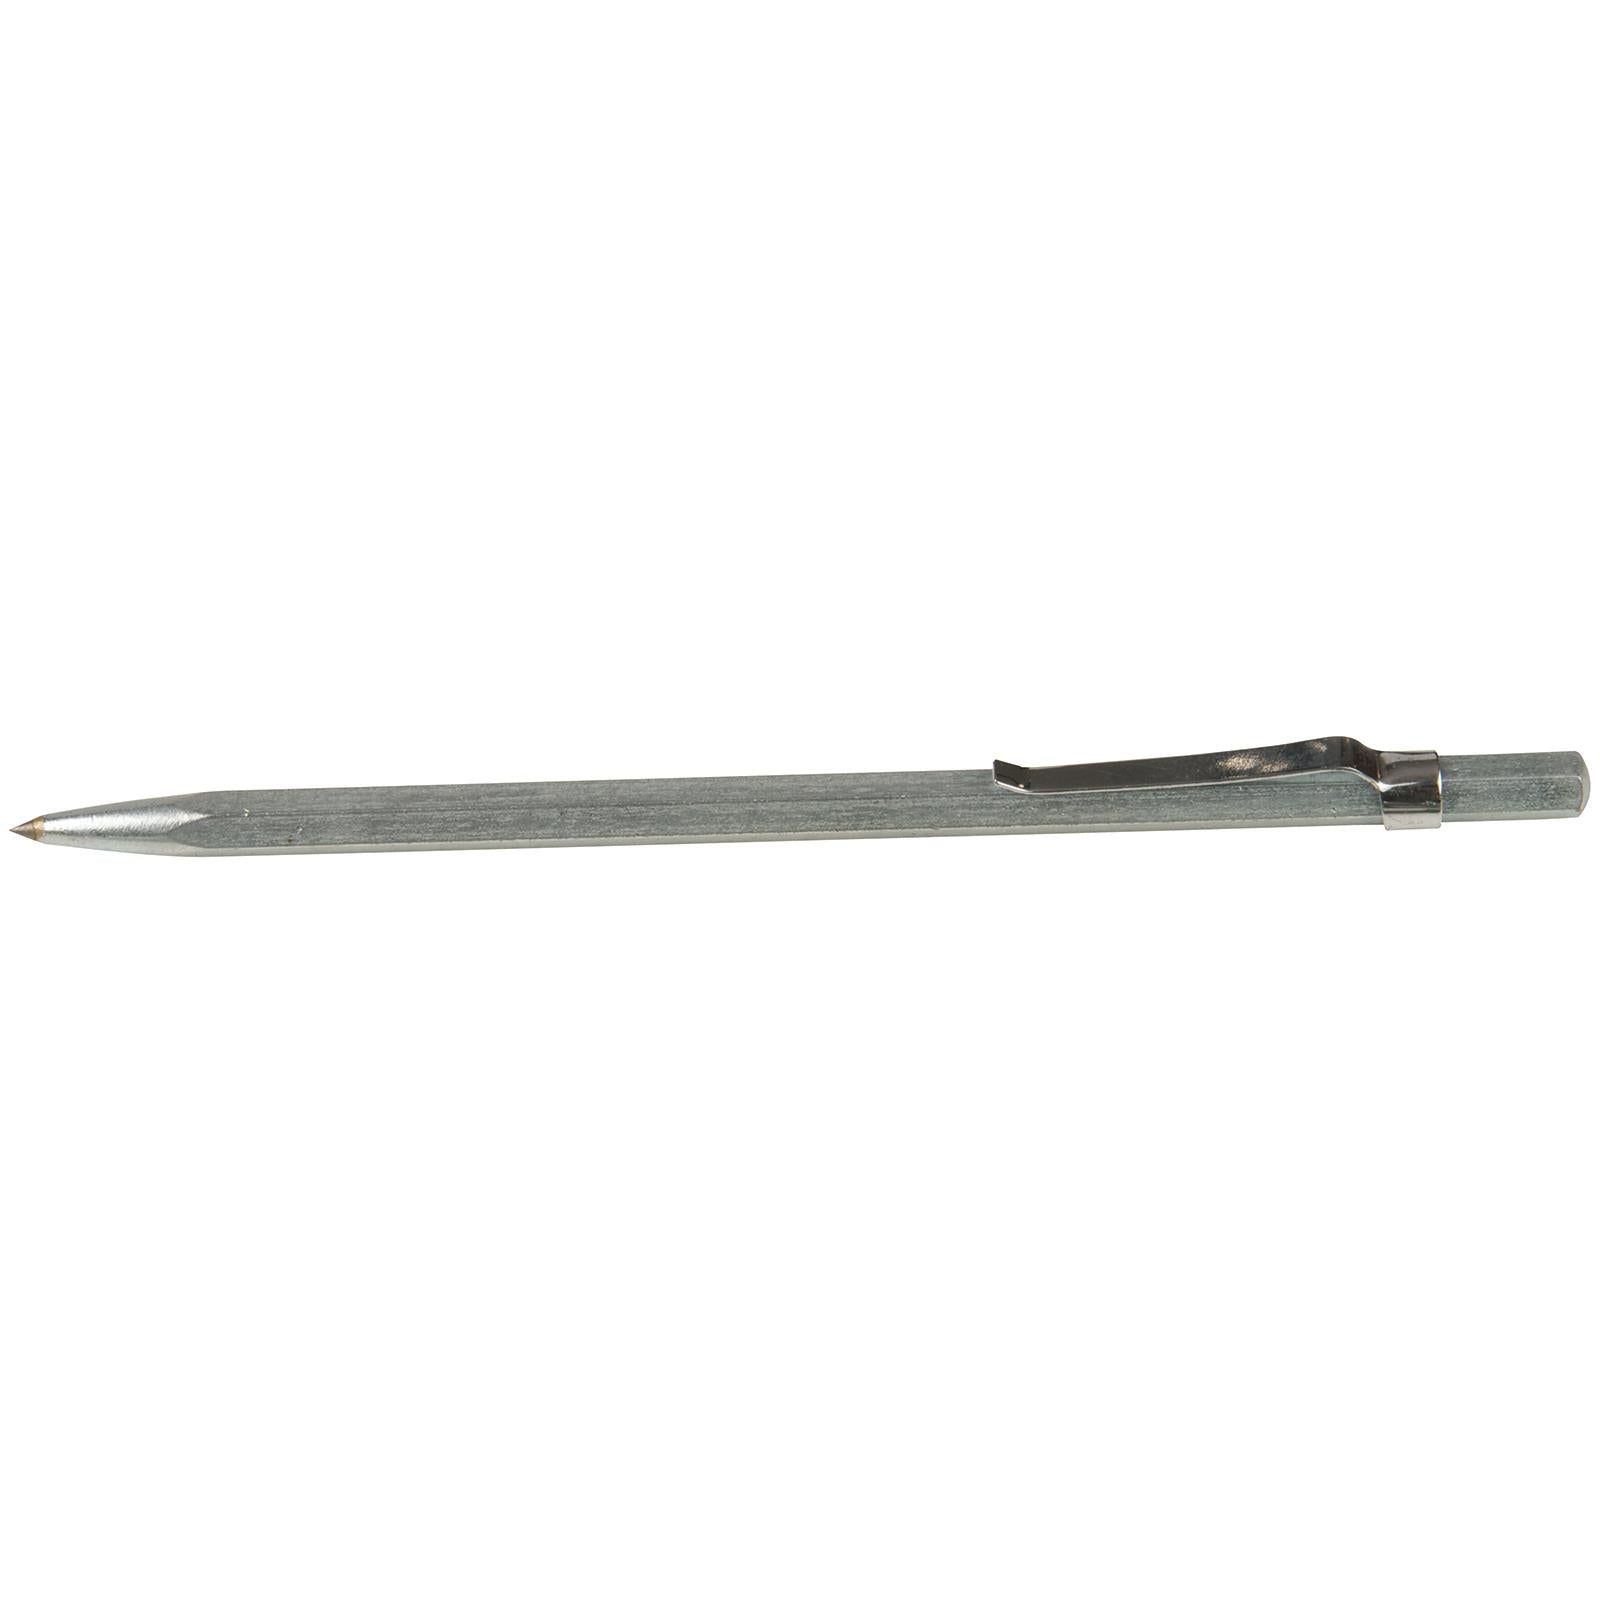 Silverline 150mm Scribing Tool Mechanical Engineering Metal Marking